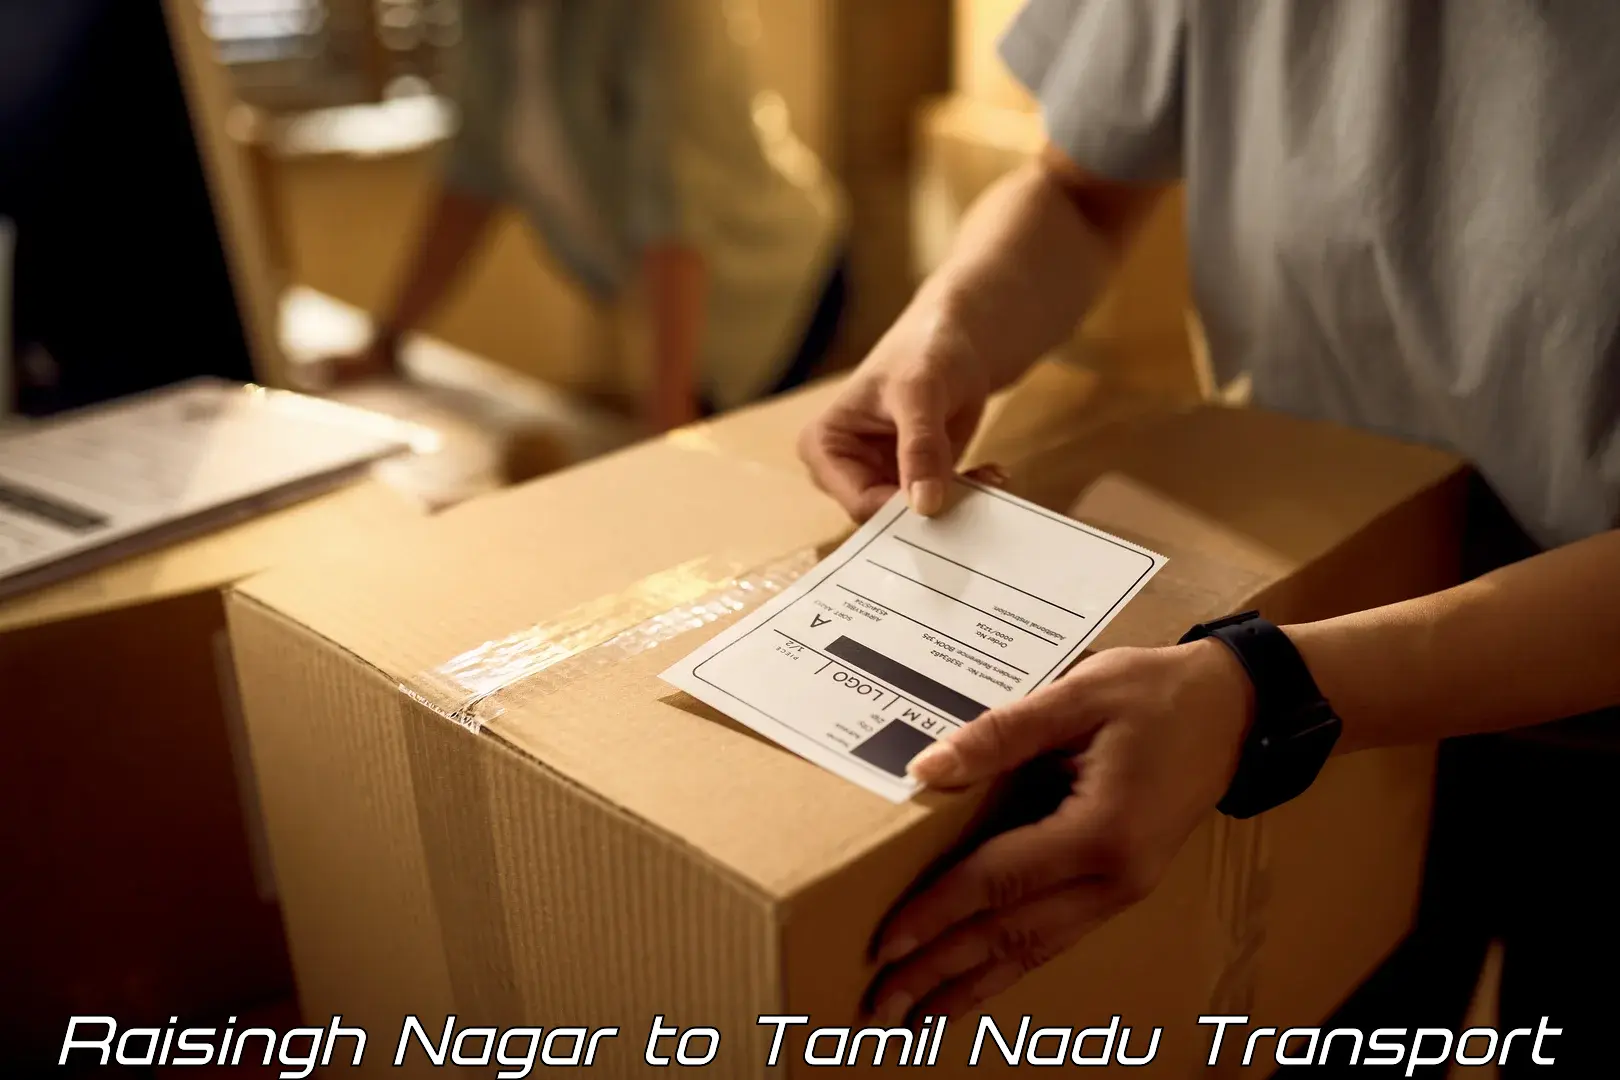 Commercial transport service Raisingh Nagar to Tamil Nadu